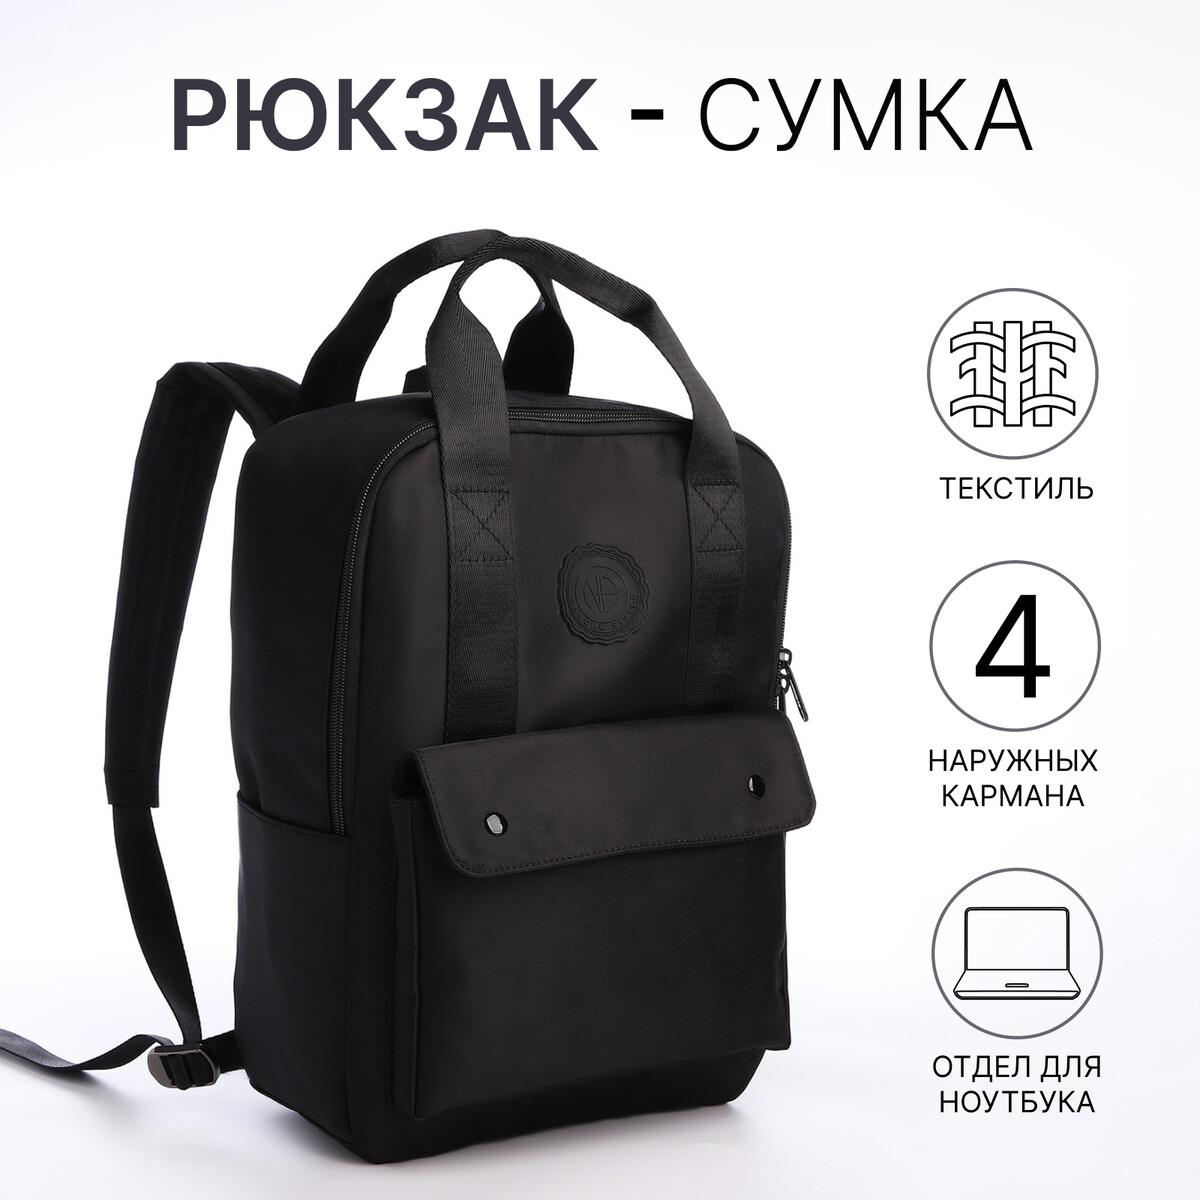 Рюкзак молодежный из текстиля на молнии, отдел для ноутбука, 4 кармана, цвет черный